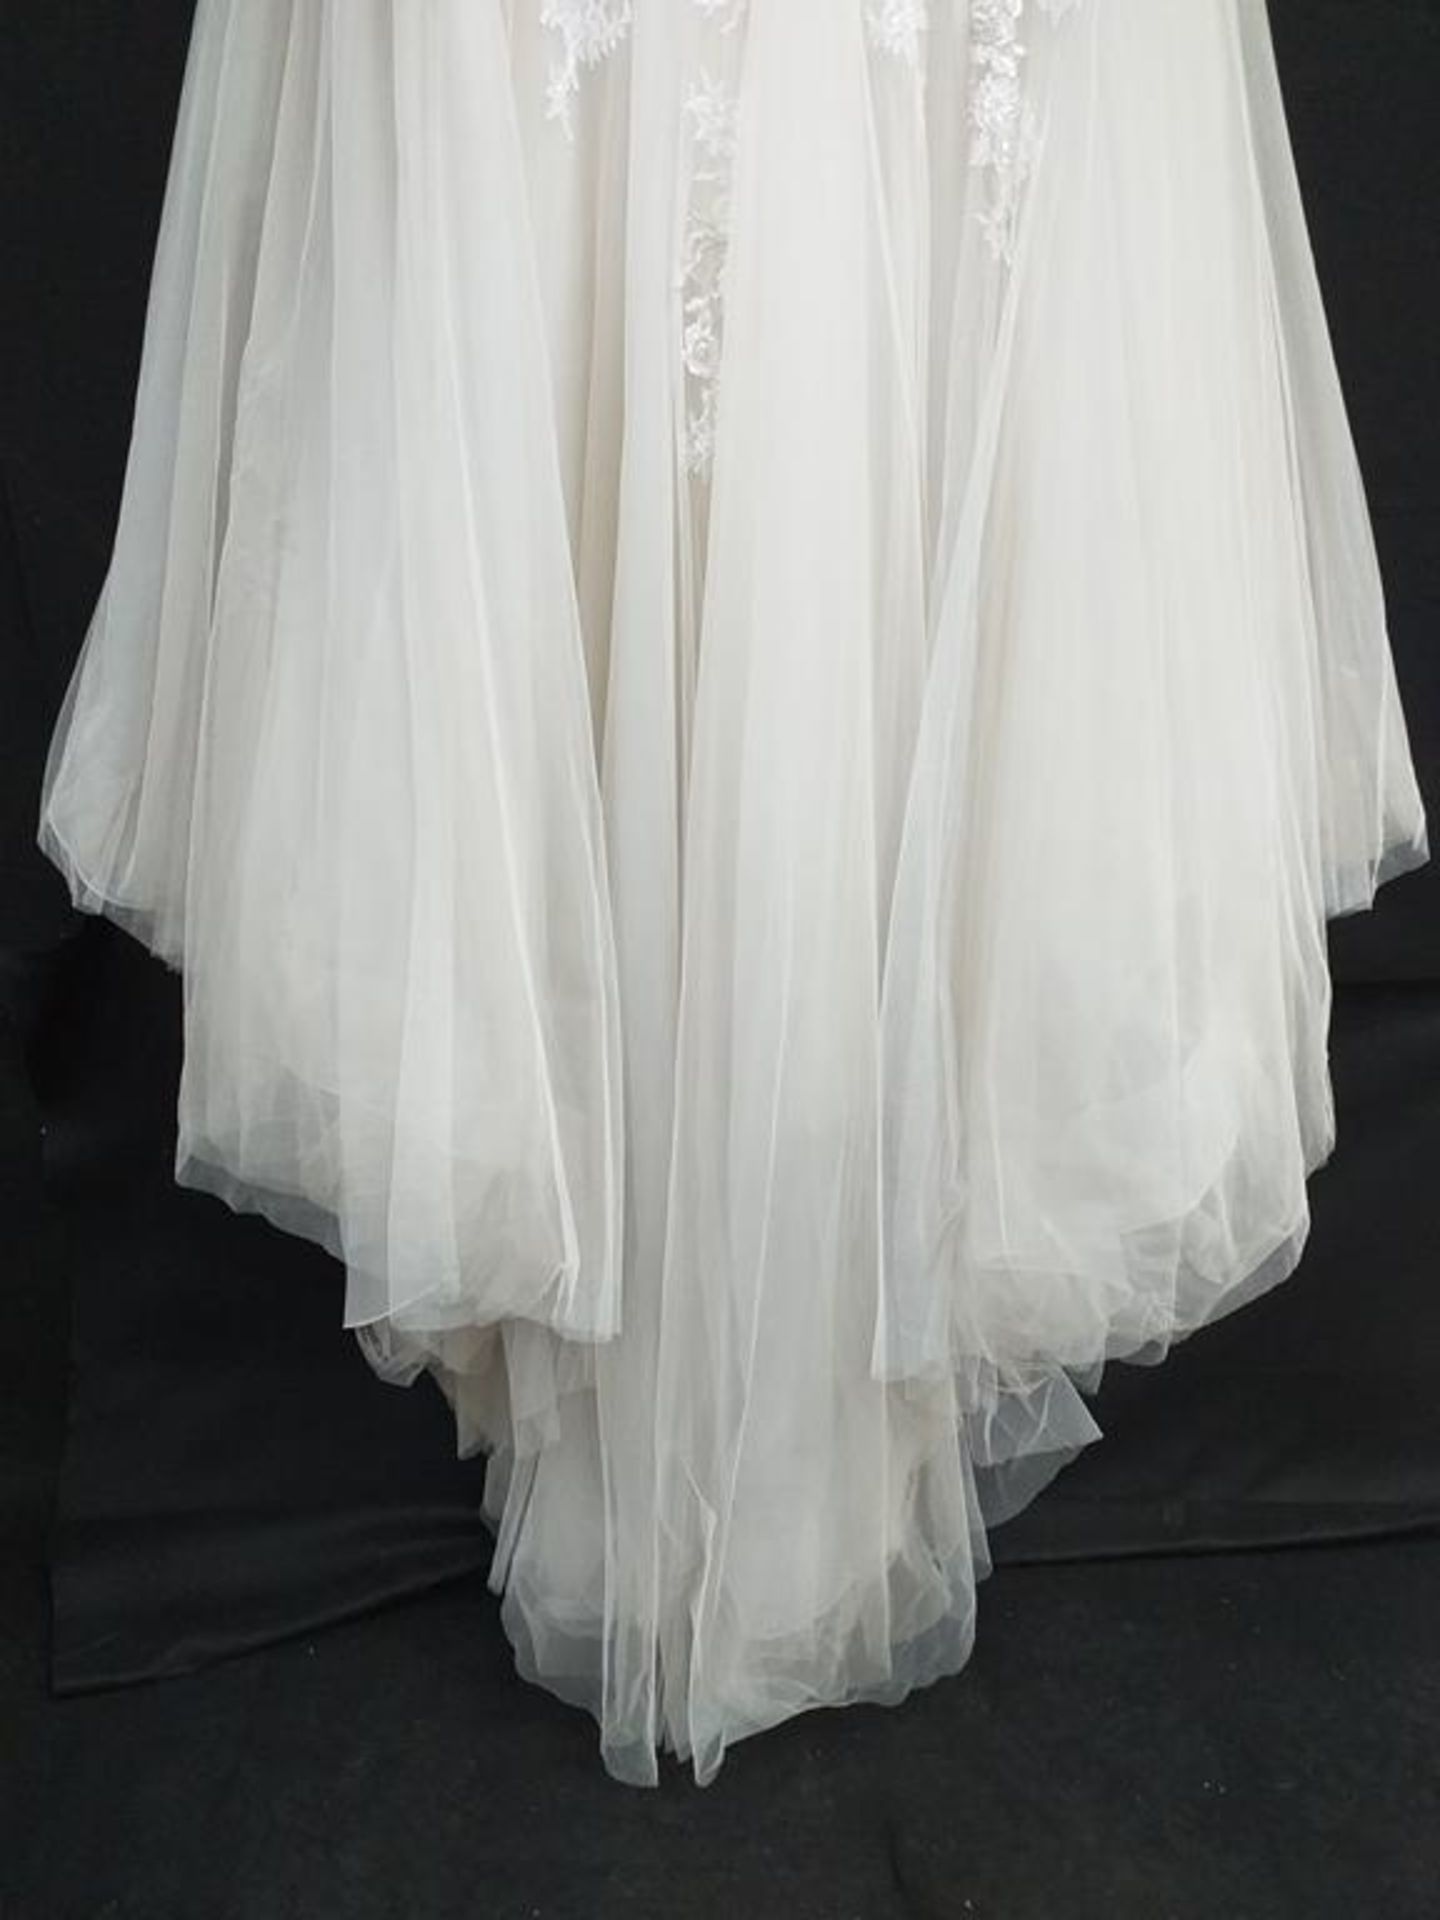 Le Papillion Toronto wedding dress - Image 7 of 9